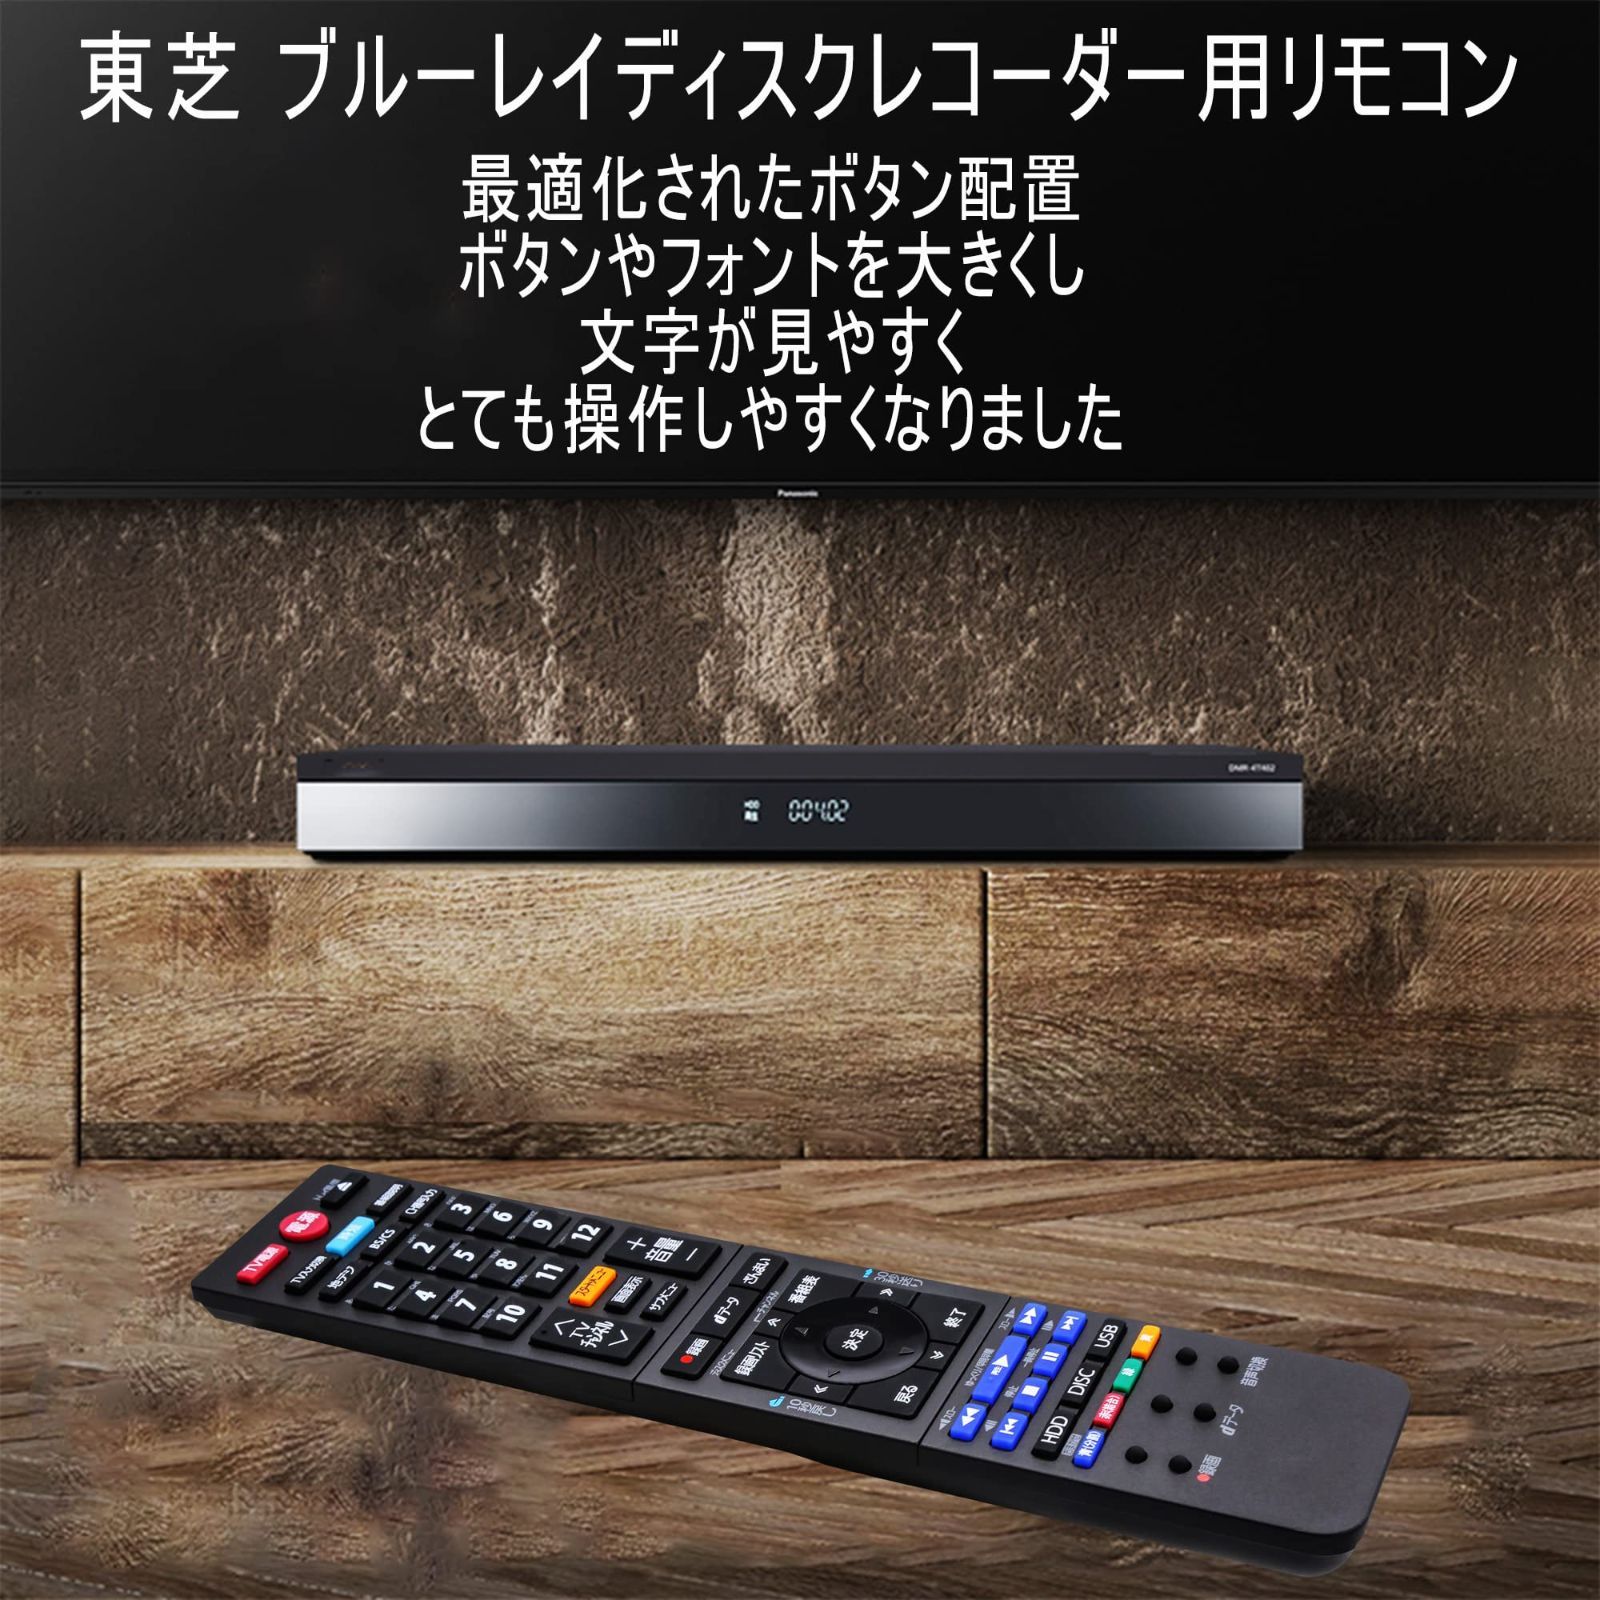 東芝 REGZA ブルーレイディスクレコーダー DBR-Z610 - テレビ/映像機器